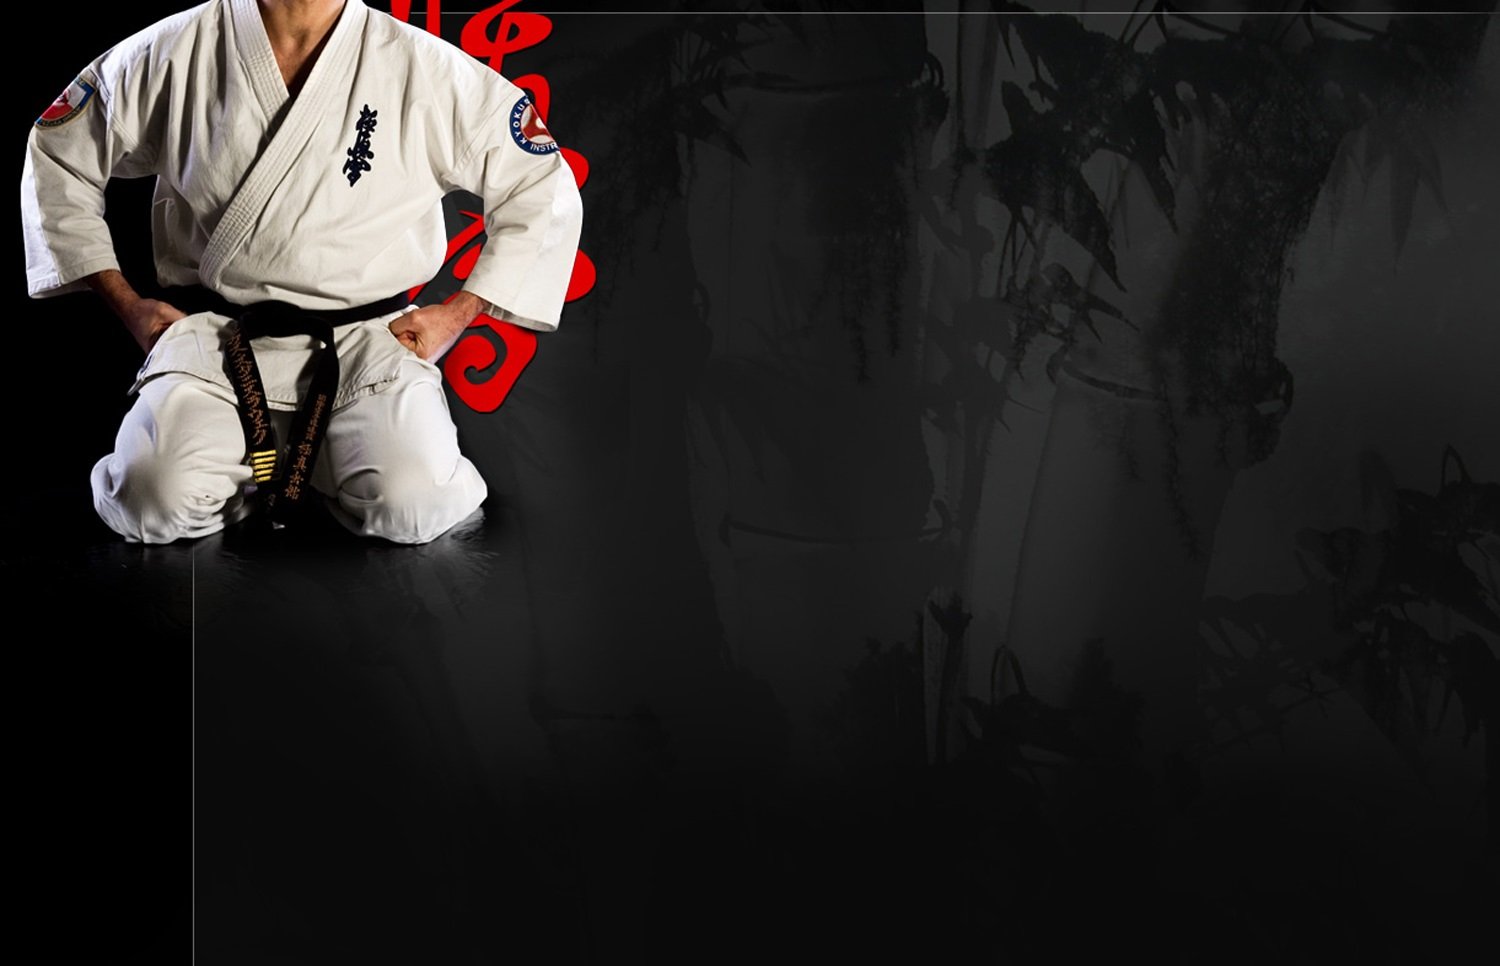 Kyokoshin karate wallpaper | 1500x966 | 282652 | WallpaperUP